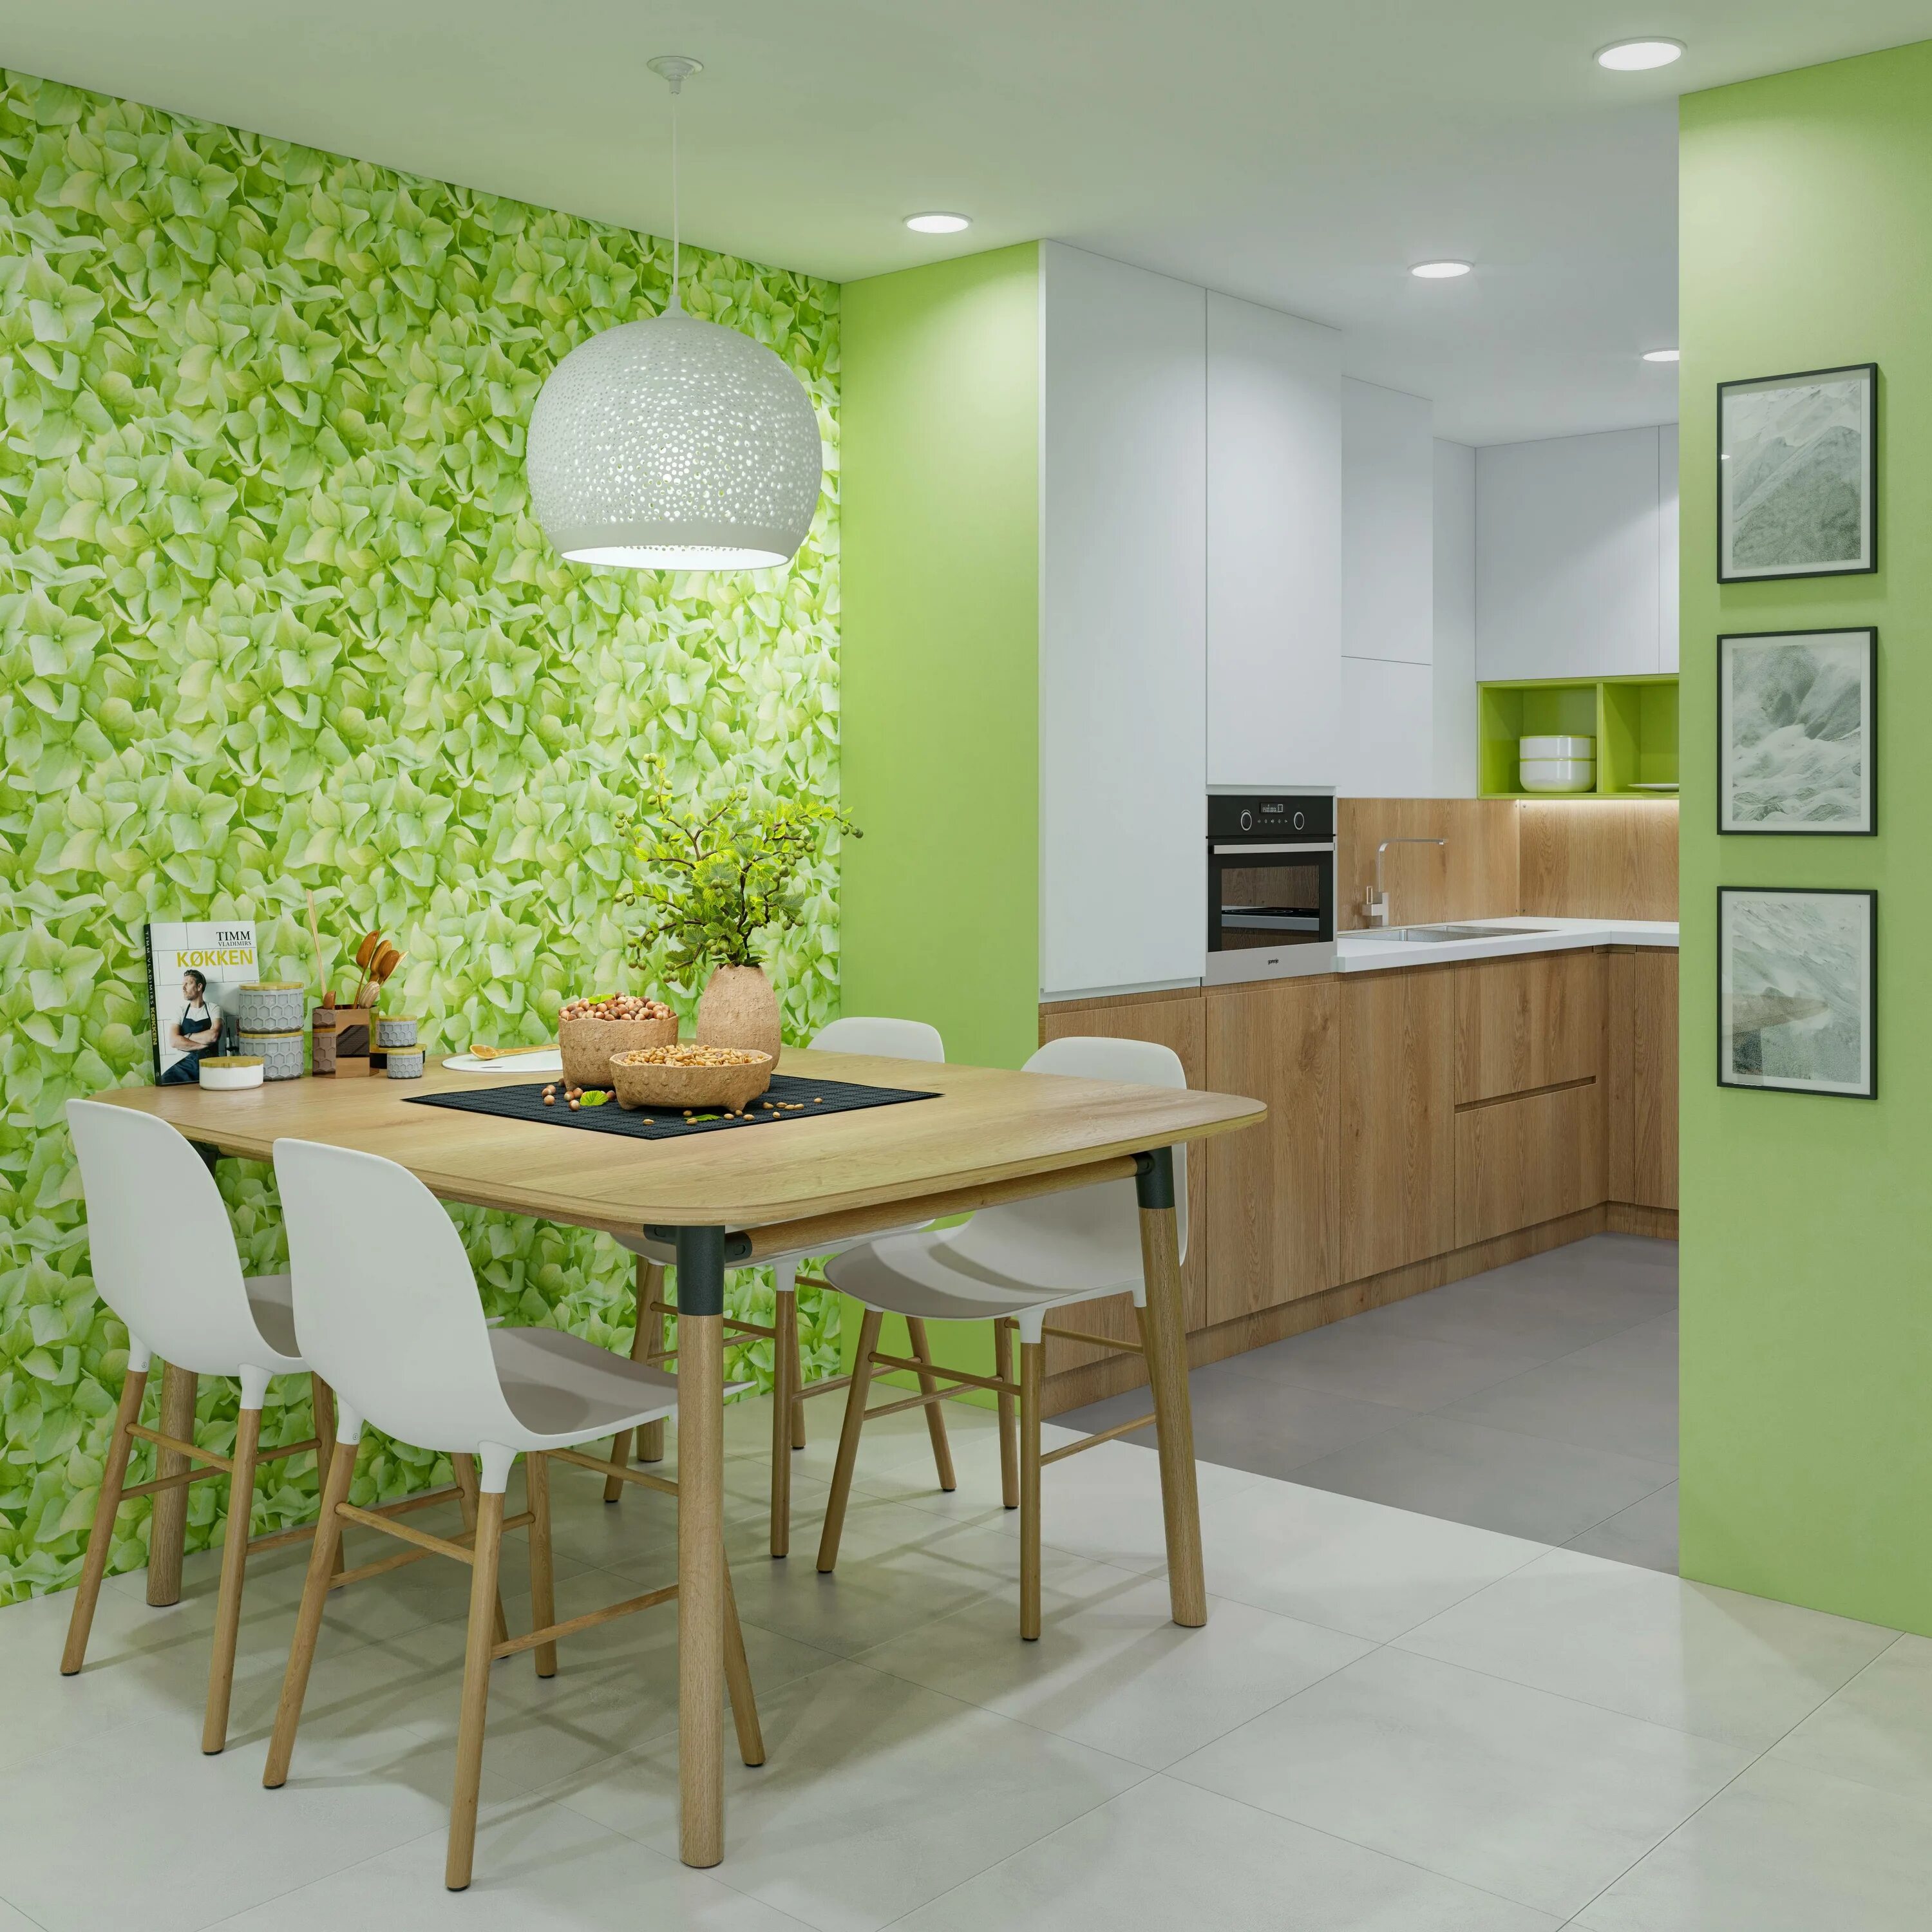 Ремонт на кухне обои. Расцветка обоев для кухни. Обои в интерьере кухни. Кухня в зеленых тонах. Салатовые стены на кухне.